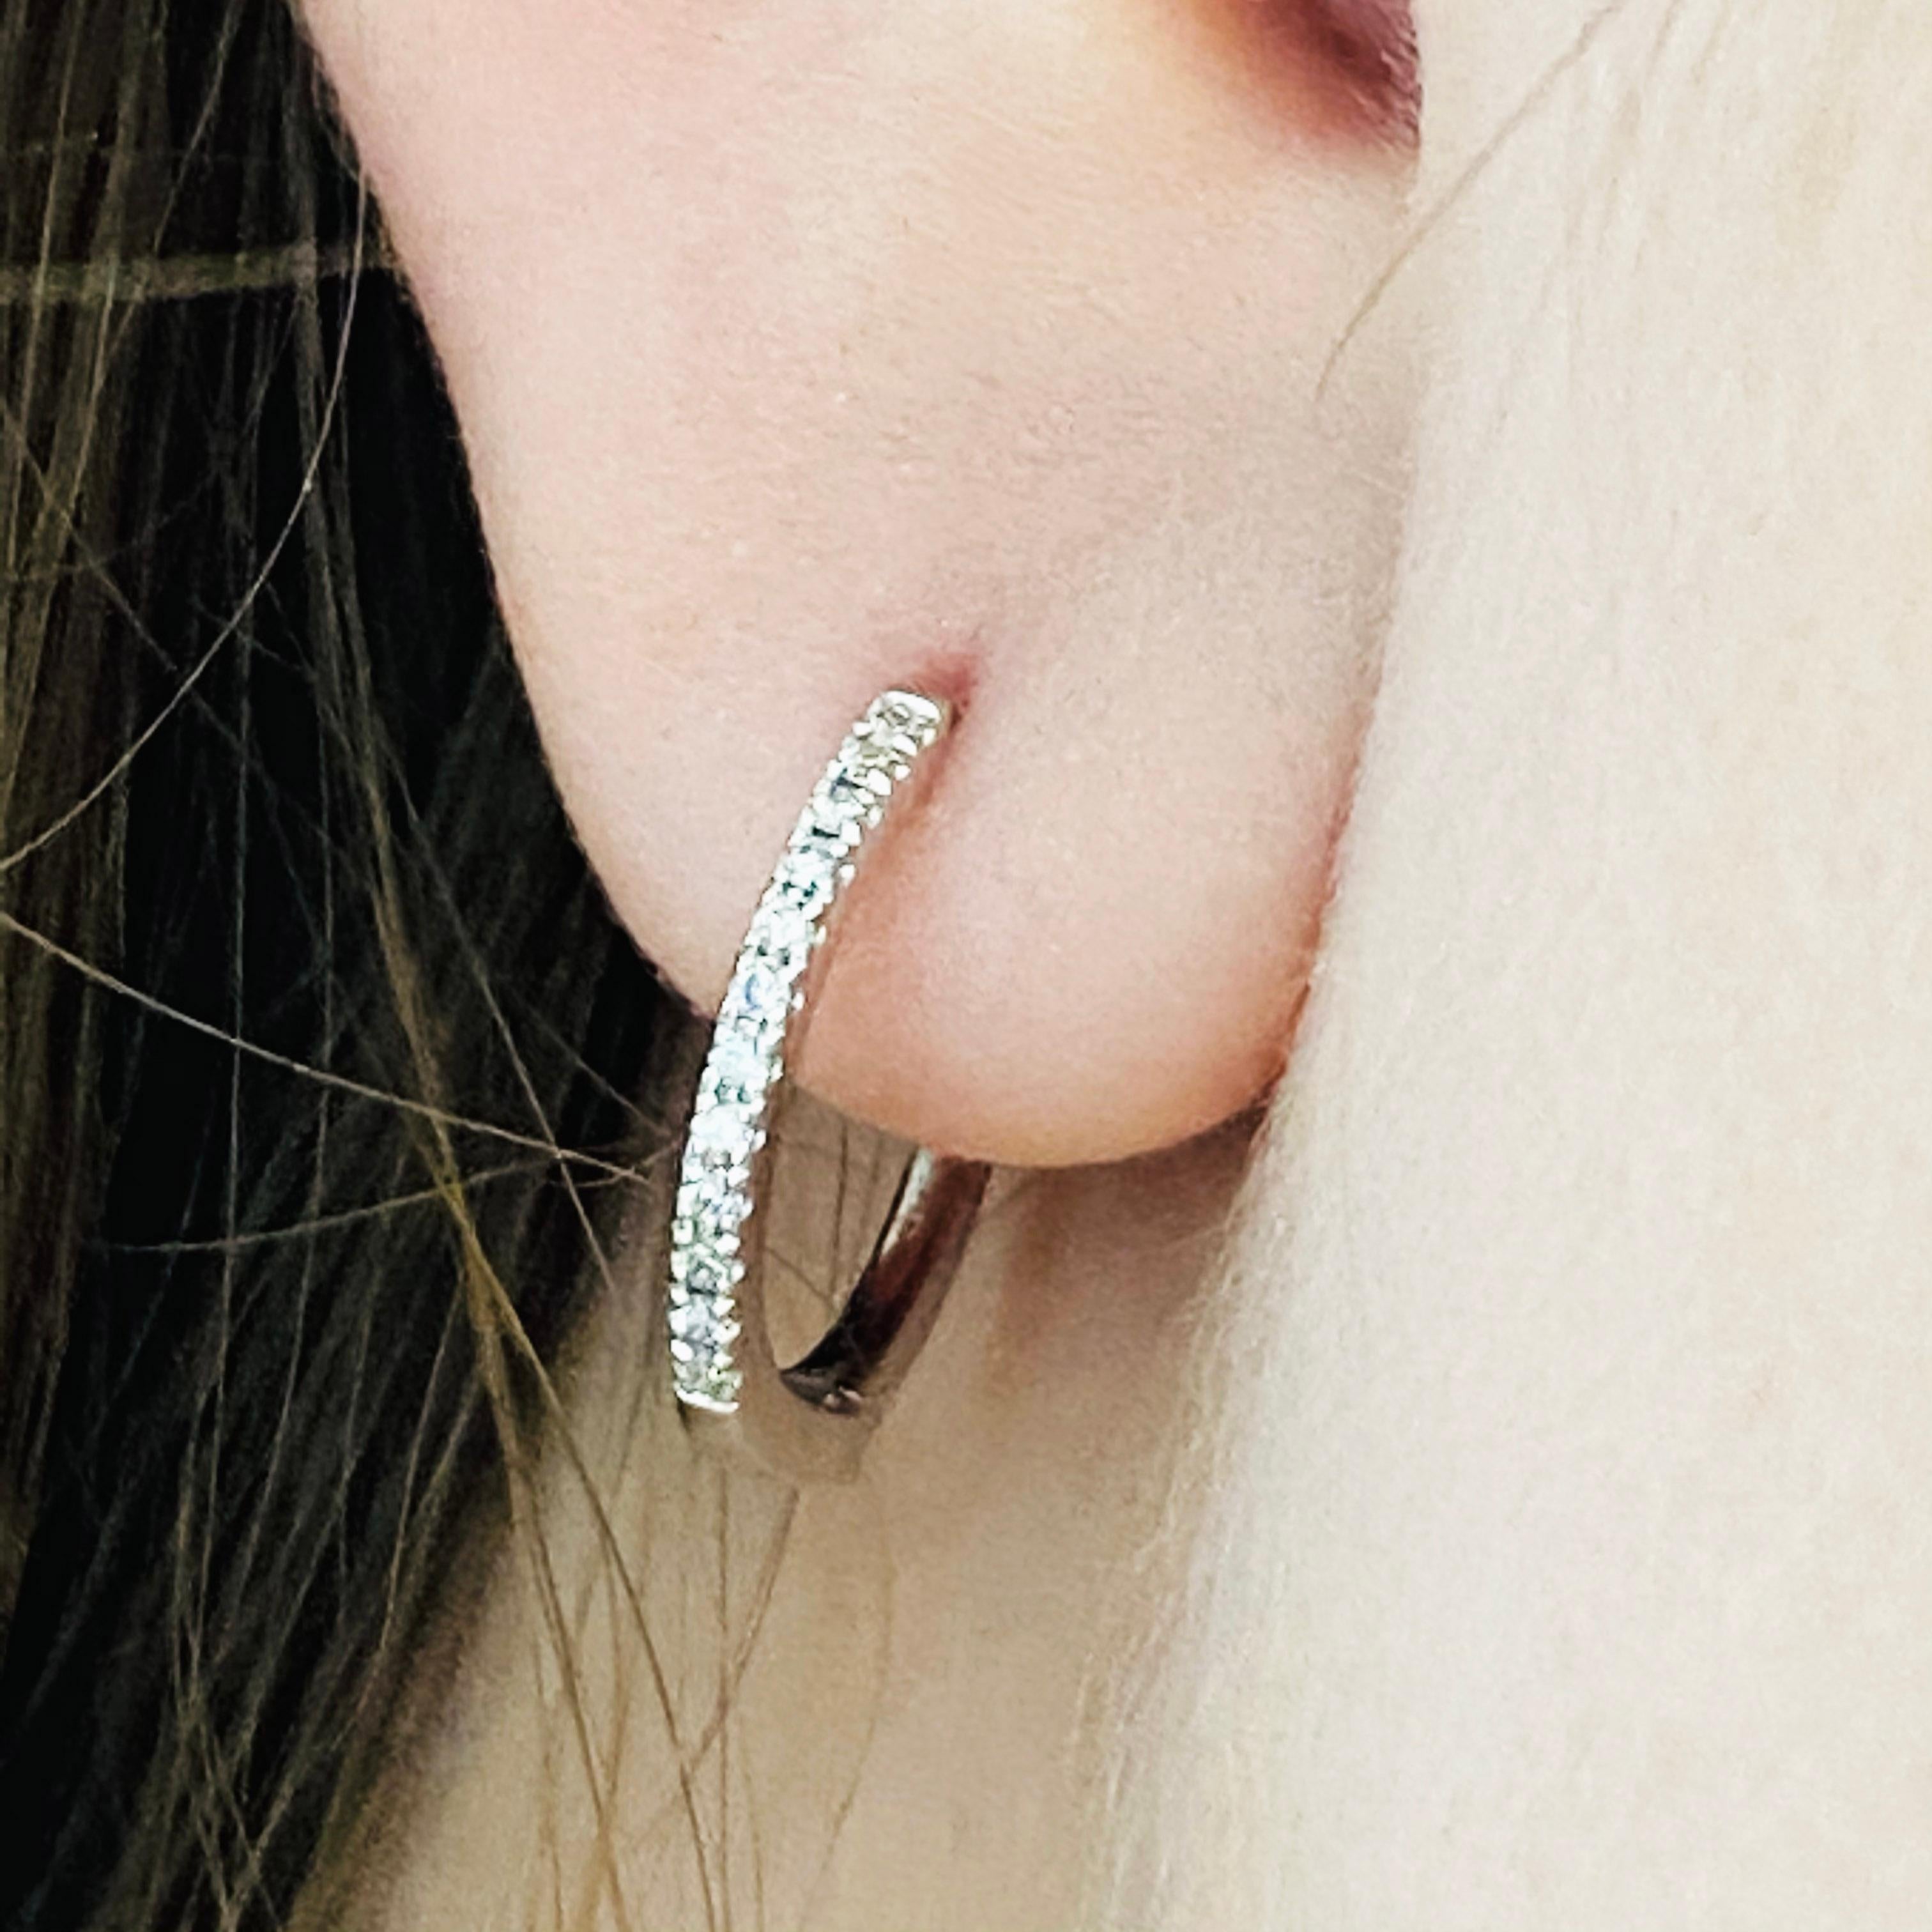 Nos 2020 boucles d'oreilles les plus populaires ! Ces étonnants anneaux en diamant en or blanc 18 carats polis offrent un look à la fois tendance et classique. Alors qu'elles étaient autrefois portées par les rois et les reines pour signifier le